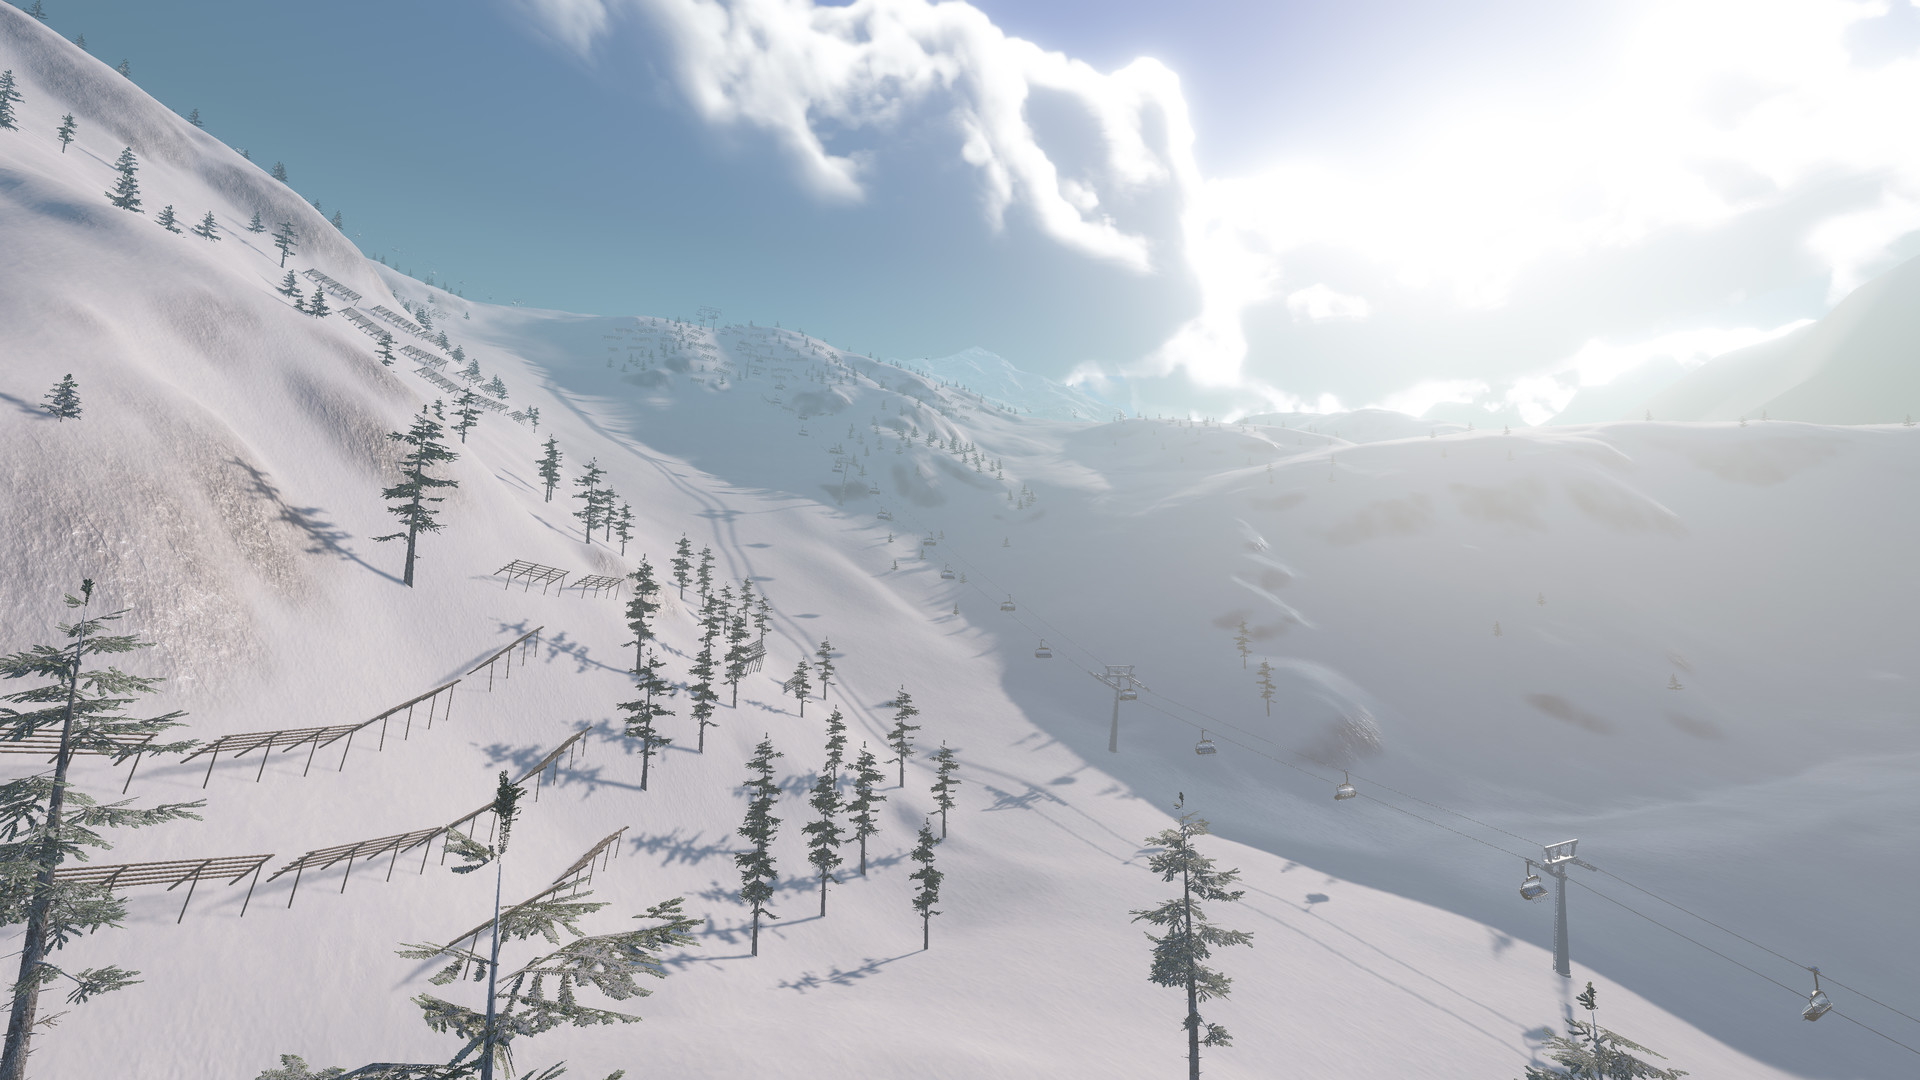 Winter Resort Simulator Free Download